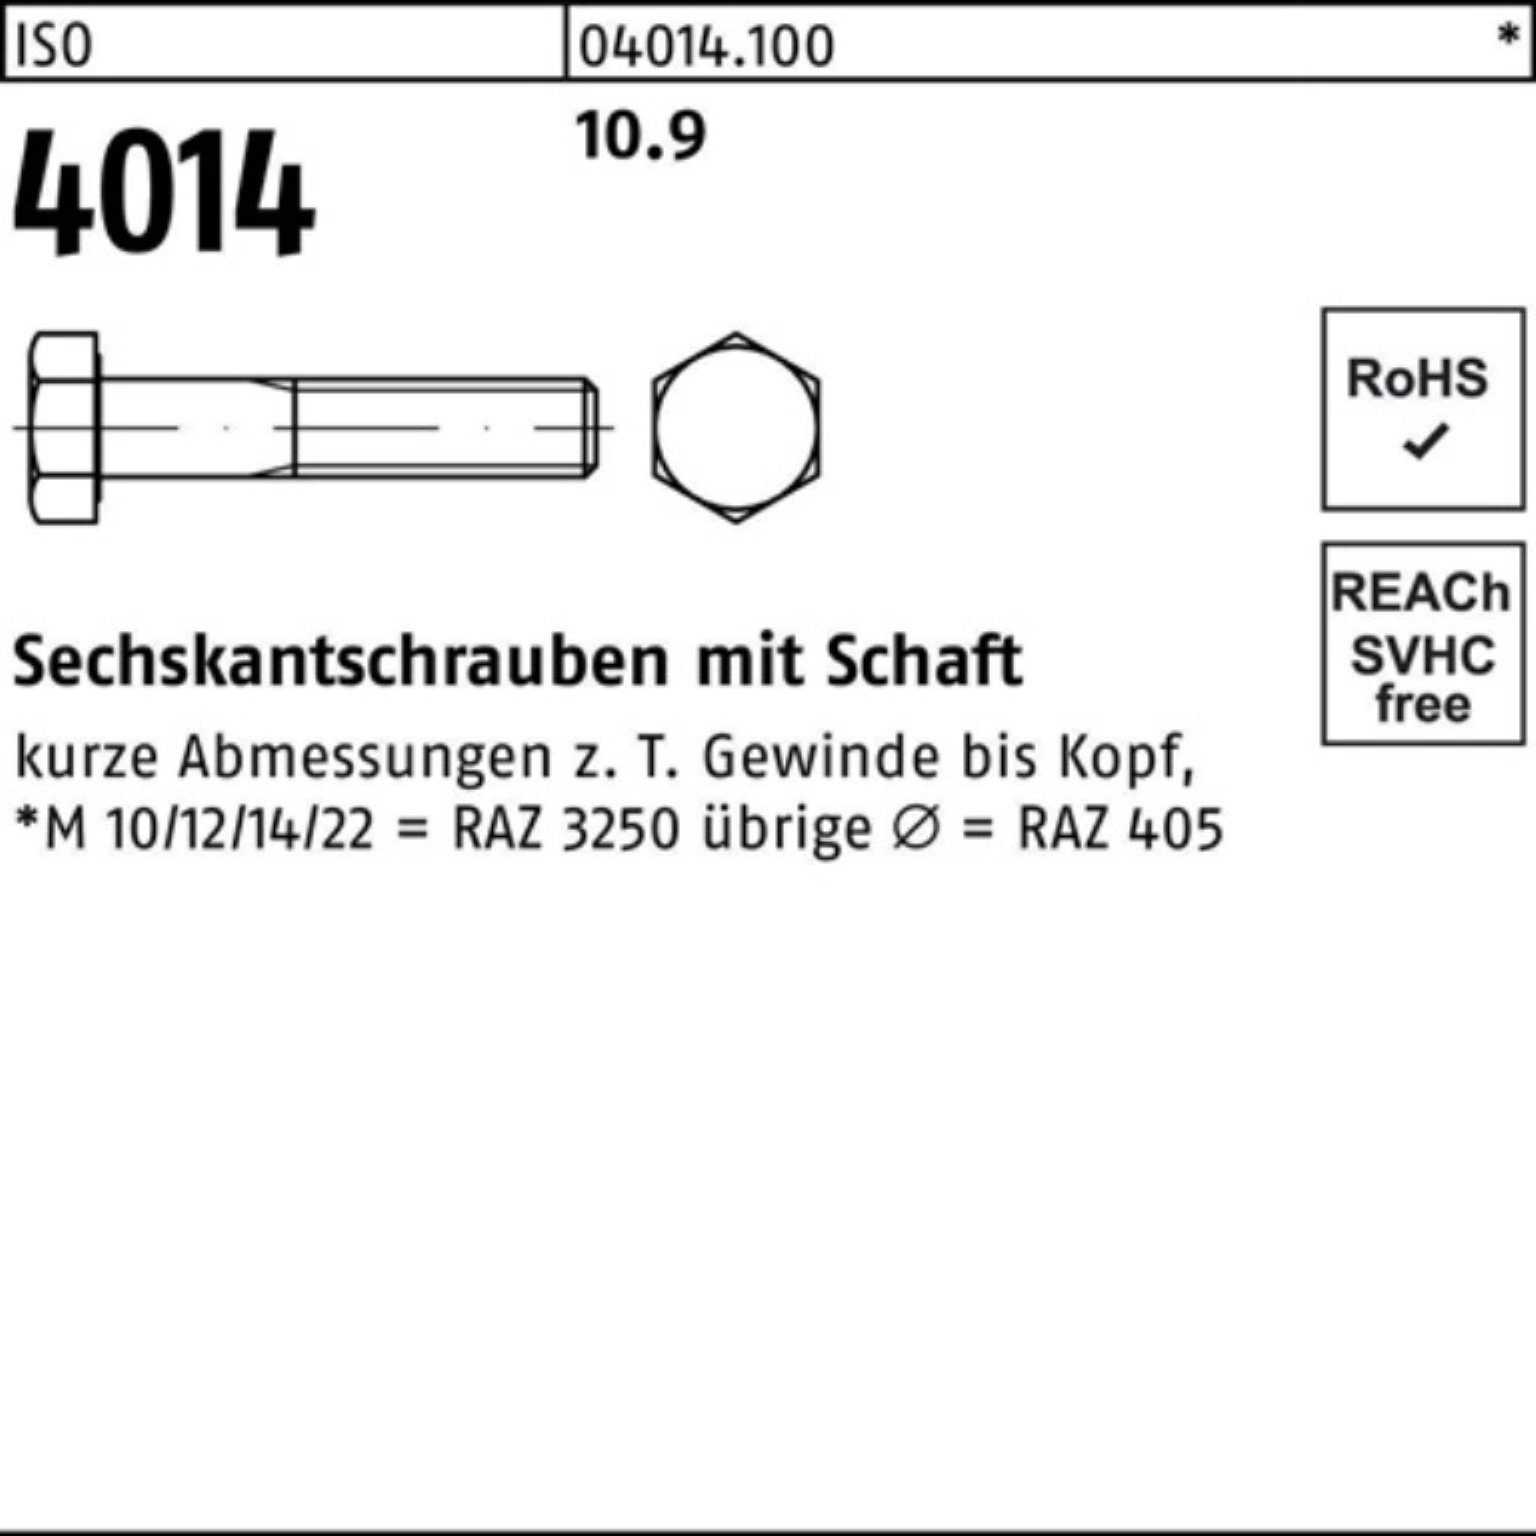 Bufab Sechskantschraube 100er 4014 M39x Pack 10.9 Stück ISO IS 120 Schaft 1 Sechskantschraube